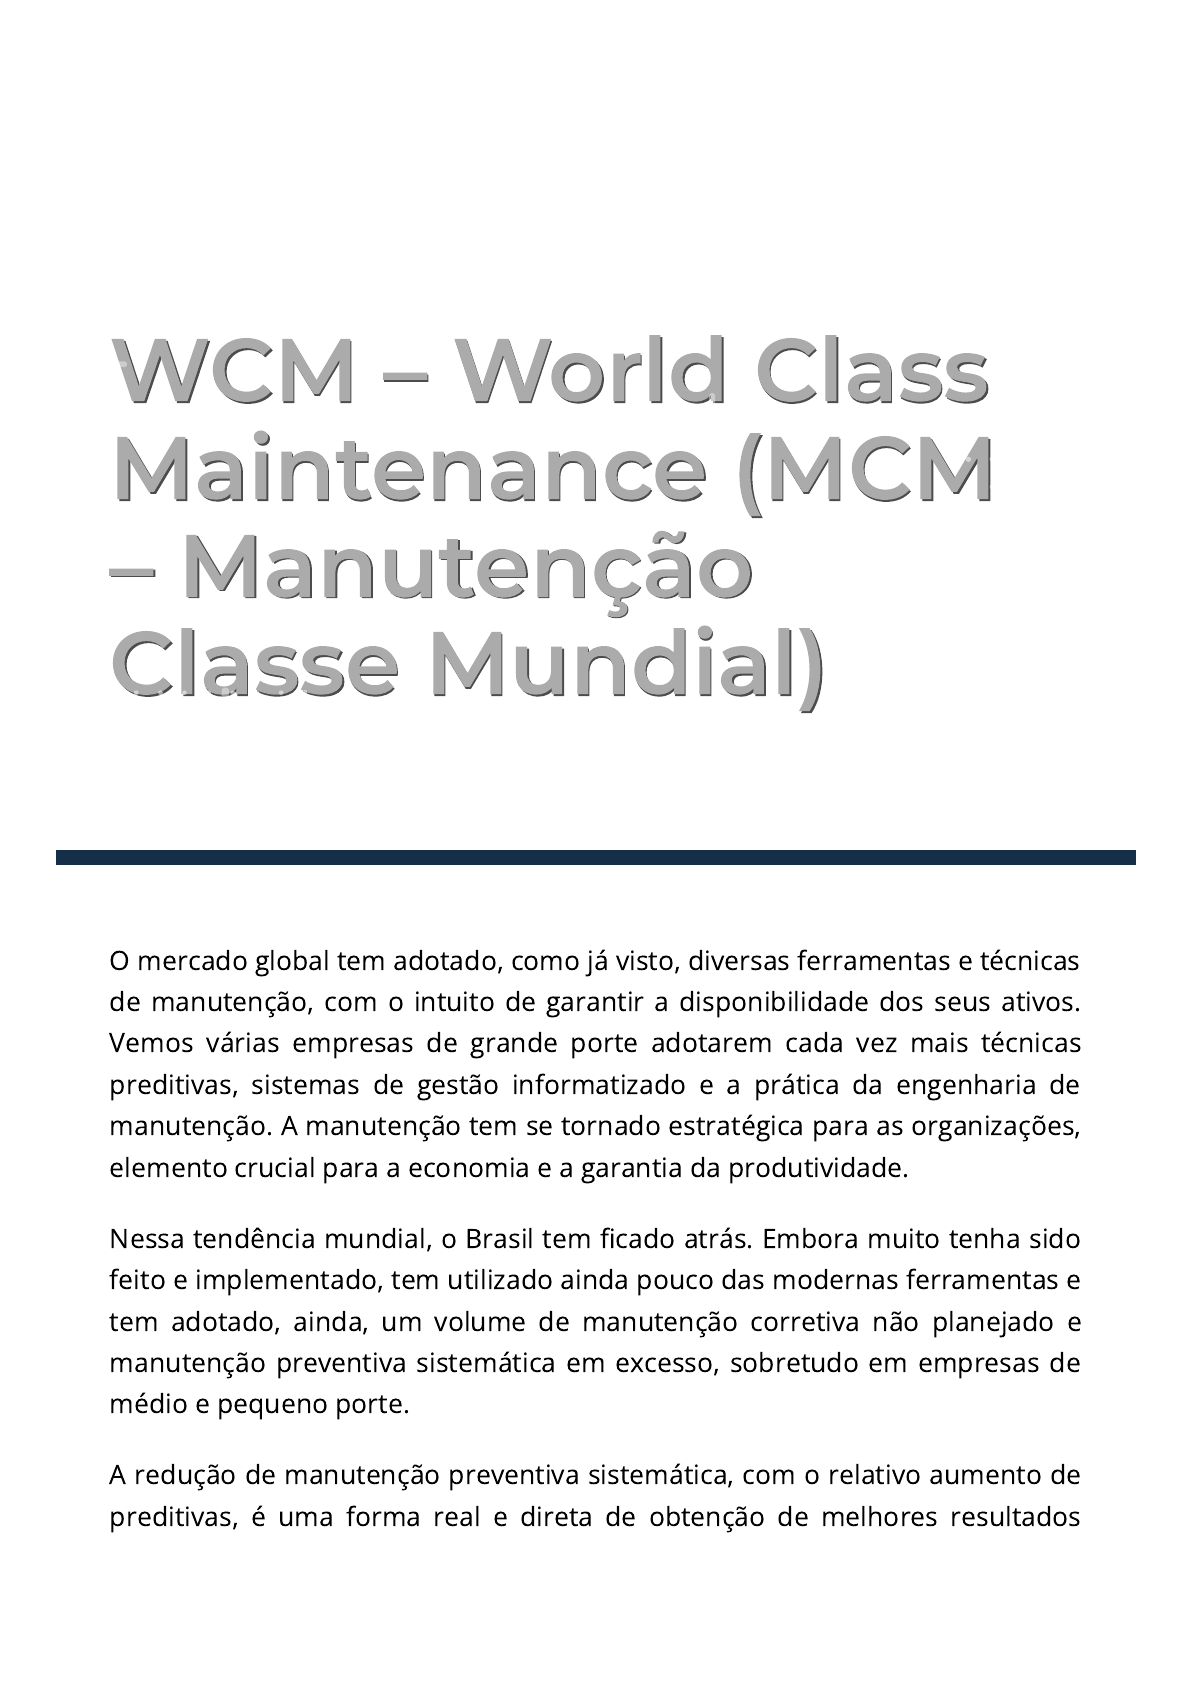 Oportunidade de conhecer o WCM com uma linguagem simples e assertiva! O WCM  é uma metodologia focada em redu…